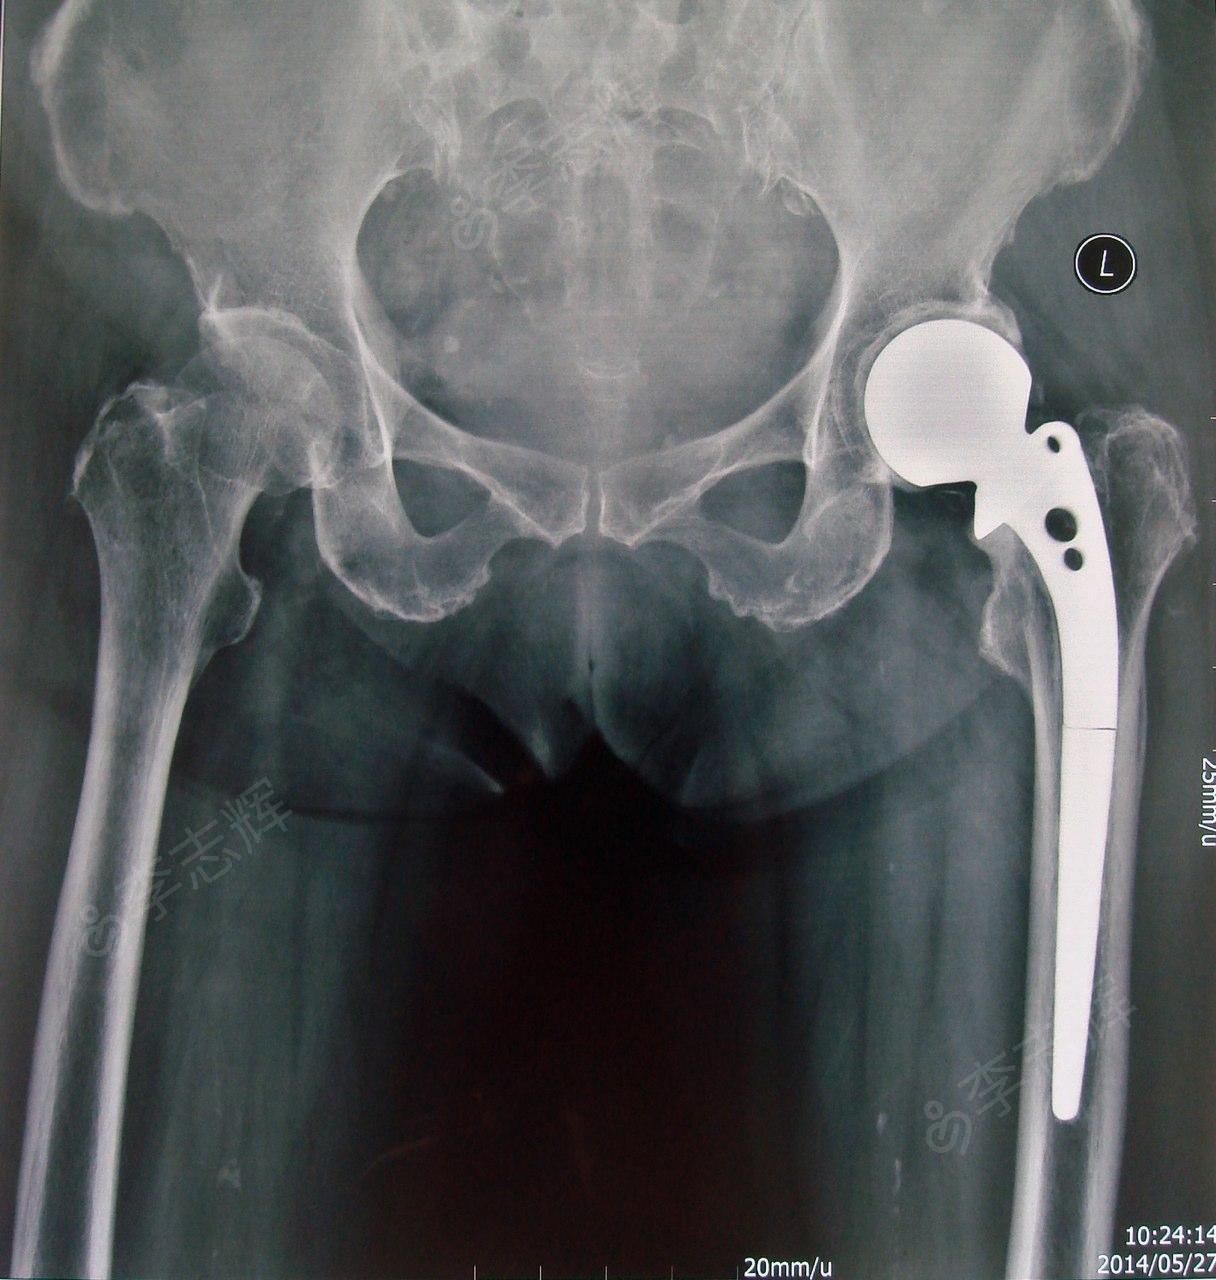 女,76岁,左股骨颈骨折半髋置换术后,传统moore骨水泥假体柄断裂